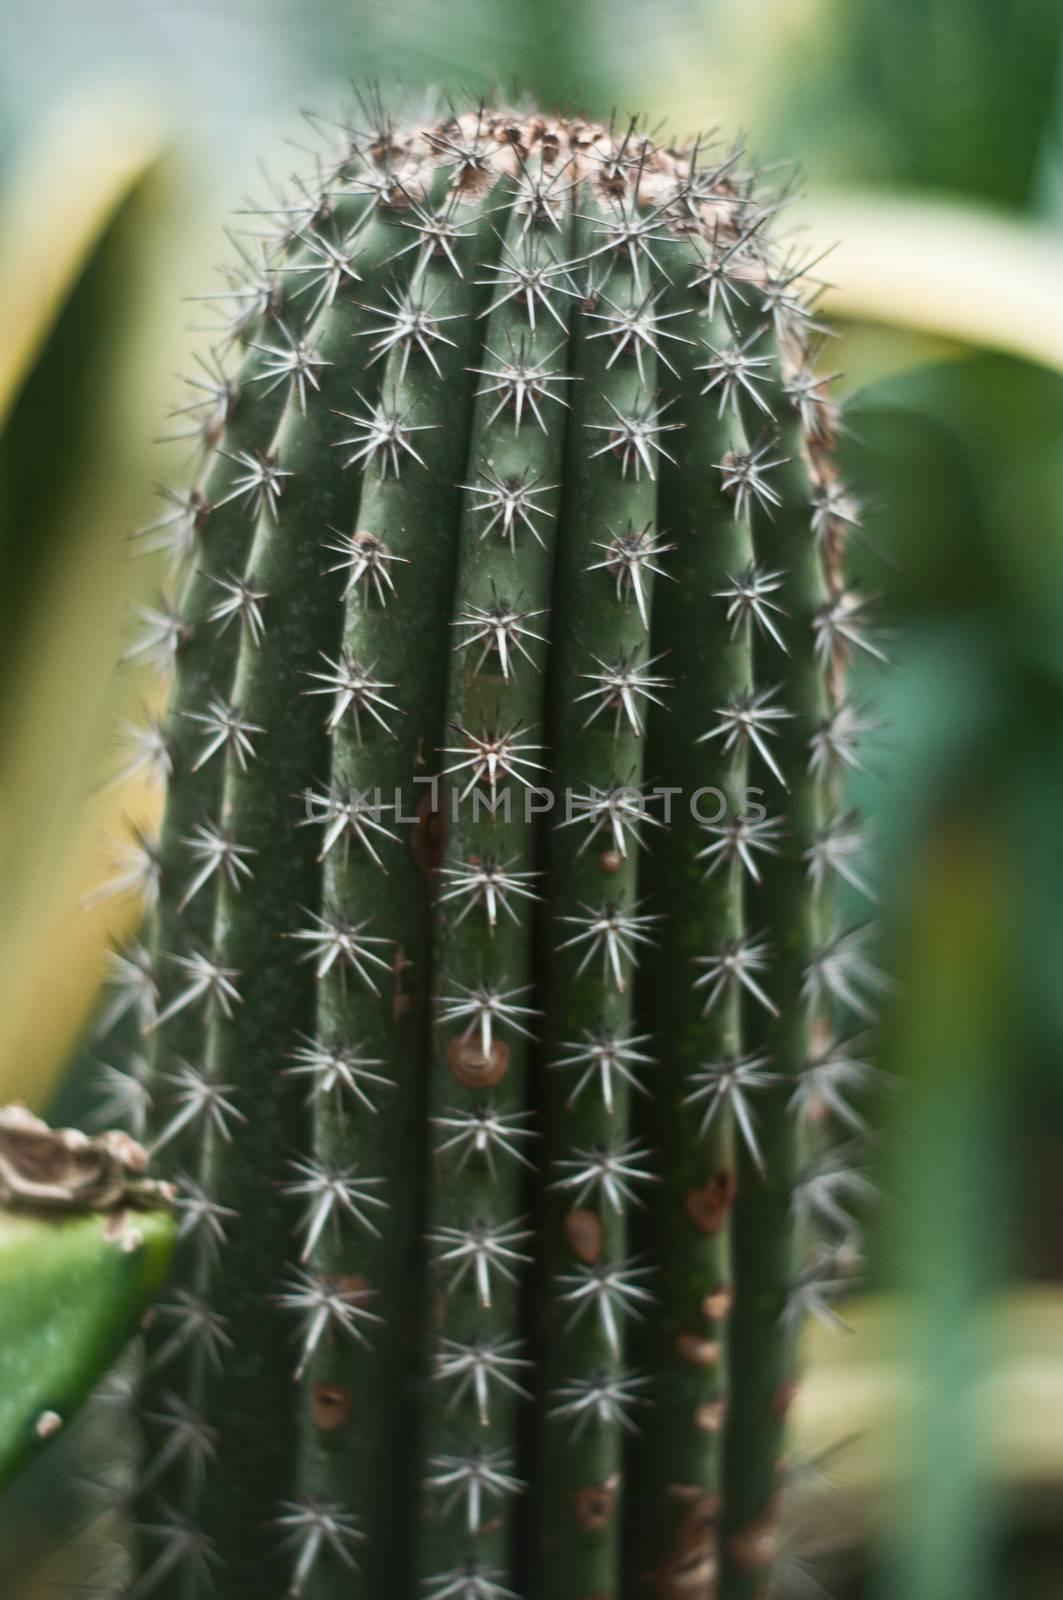 cactus closeup in tropical garden by NeydtStock